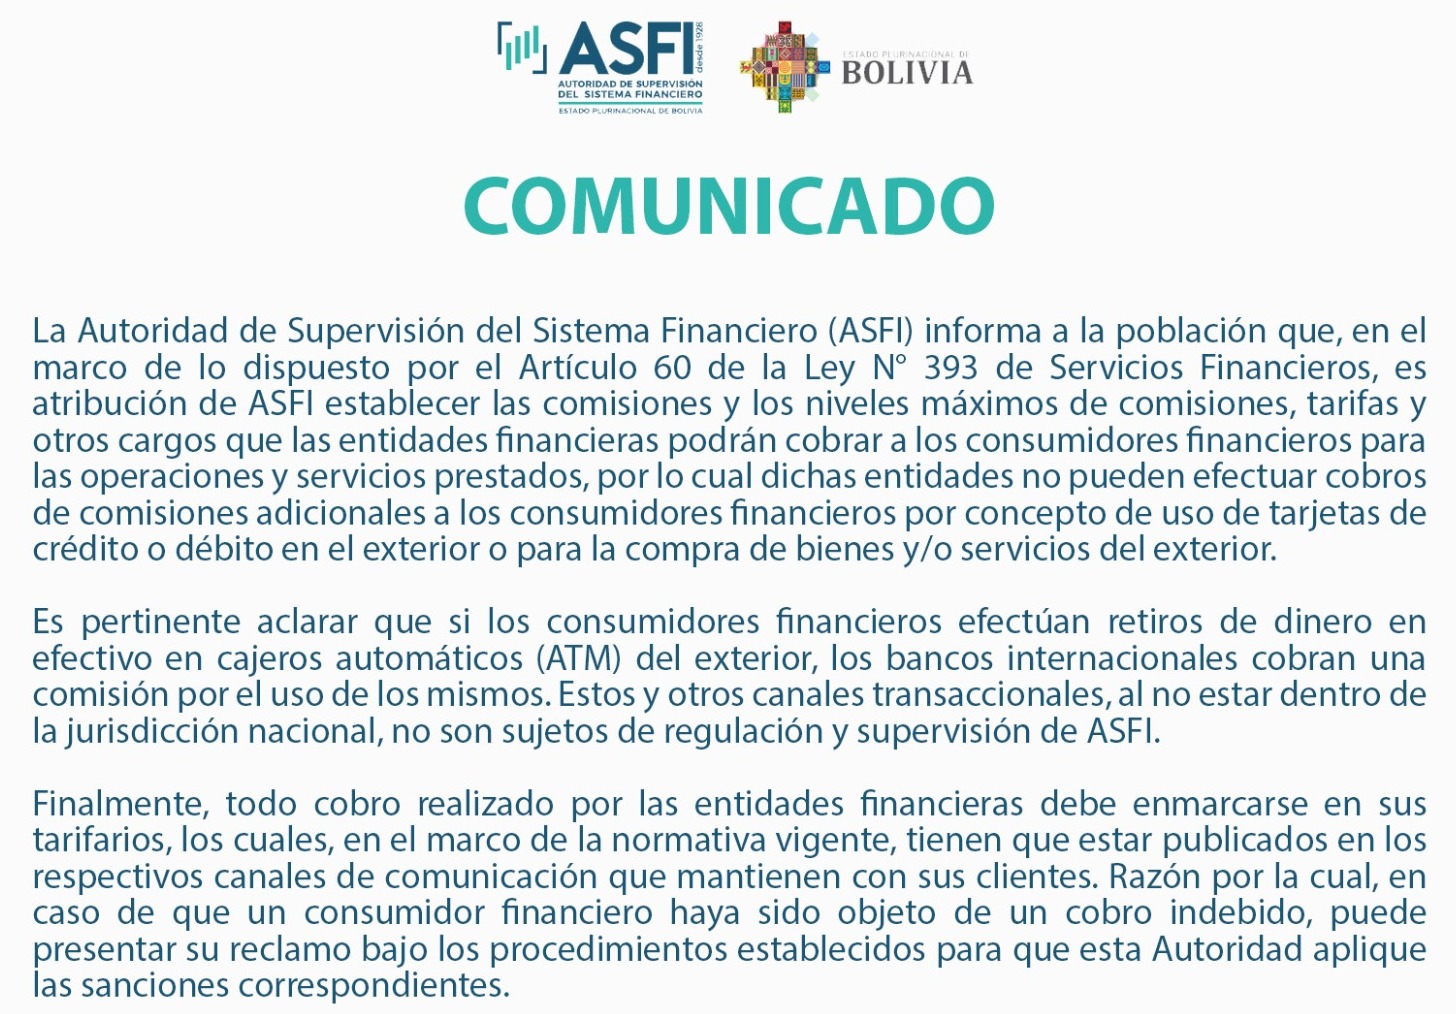 ASFI: Entidades financieras no pueden hacer cobros adicionales por uso de tarjetas en el exterior o compras del exterior